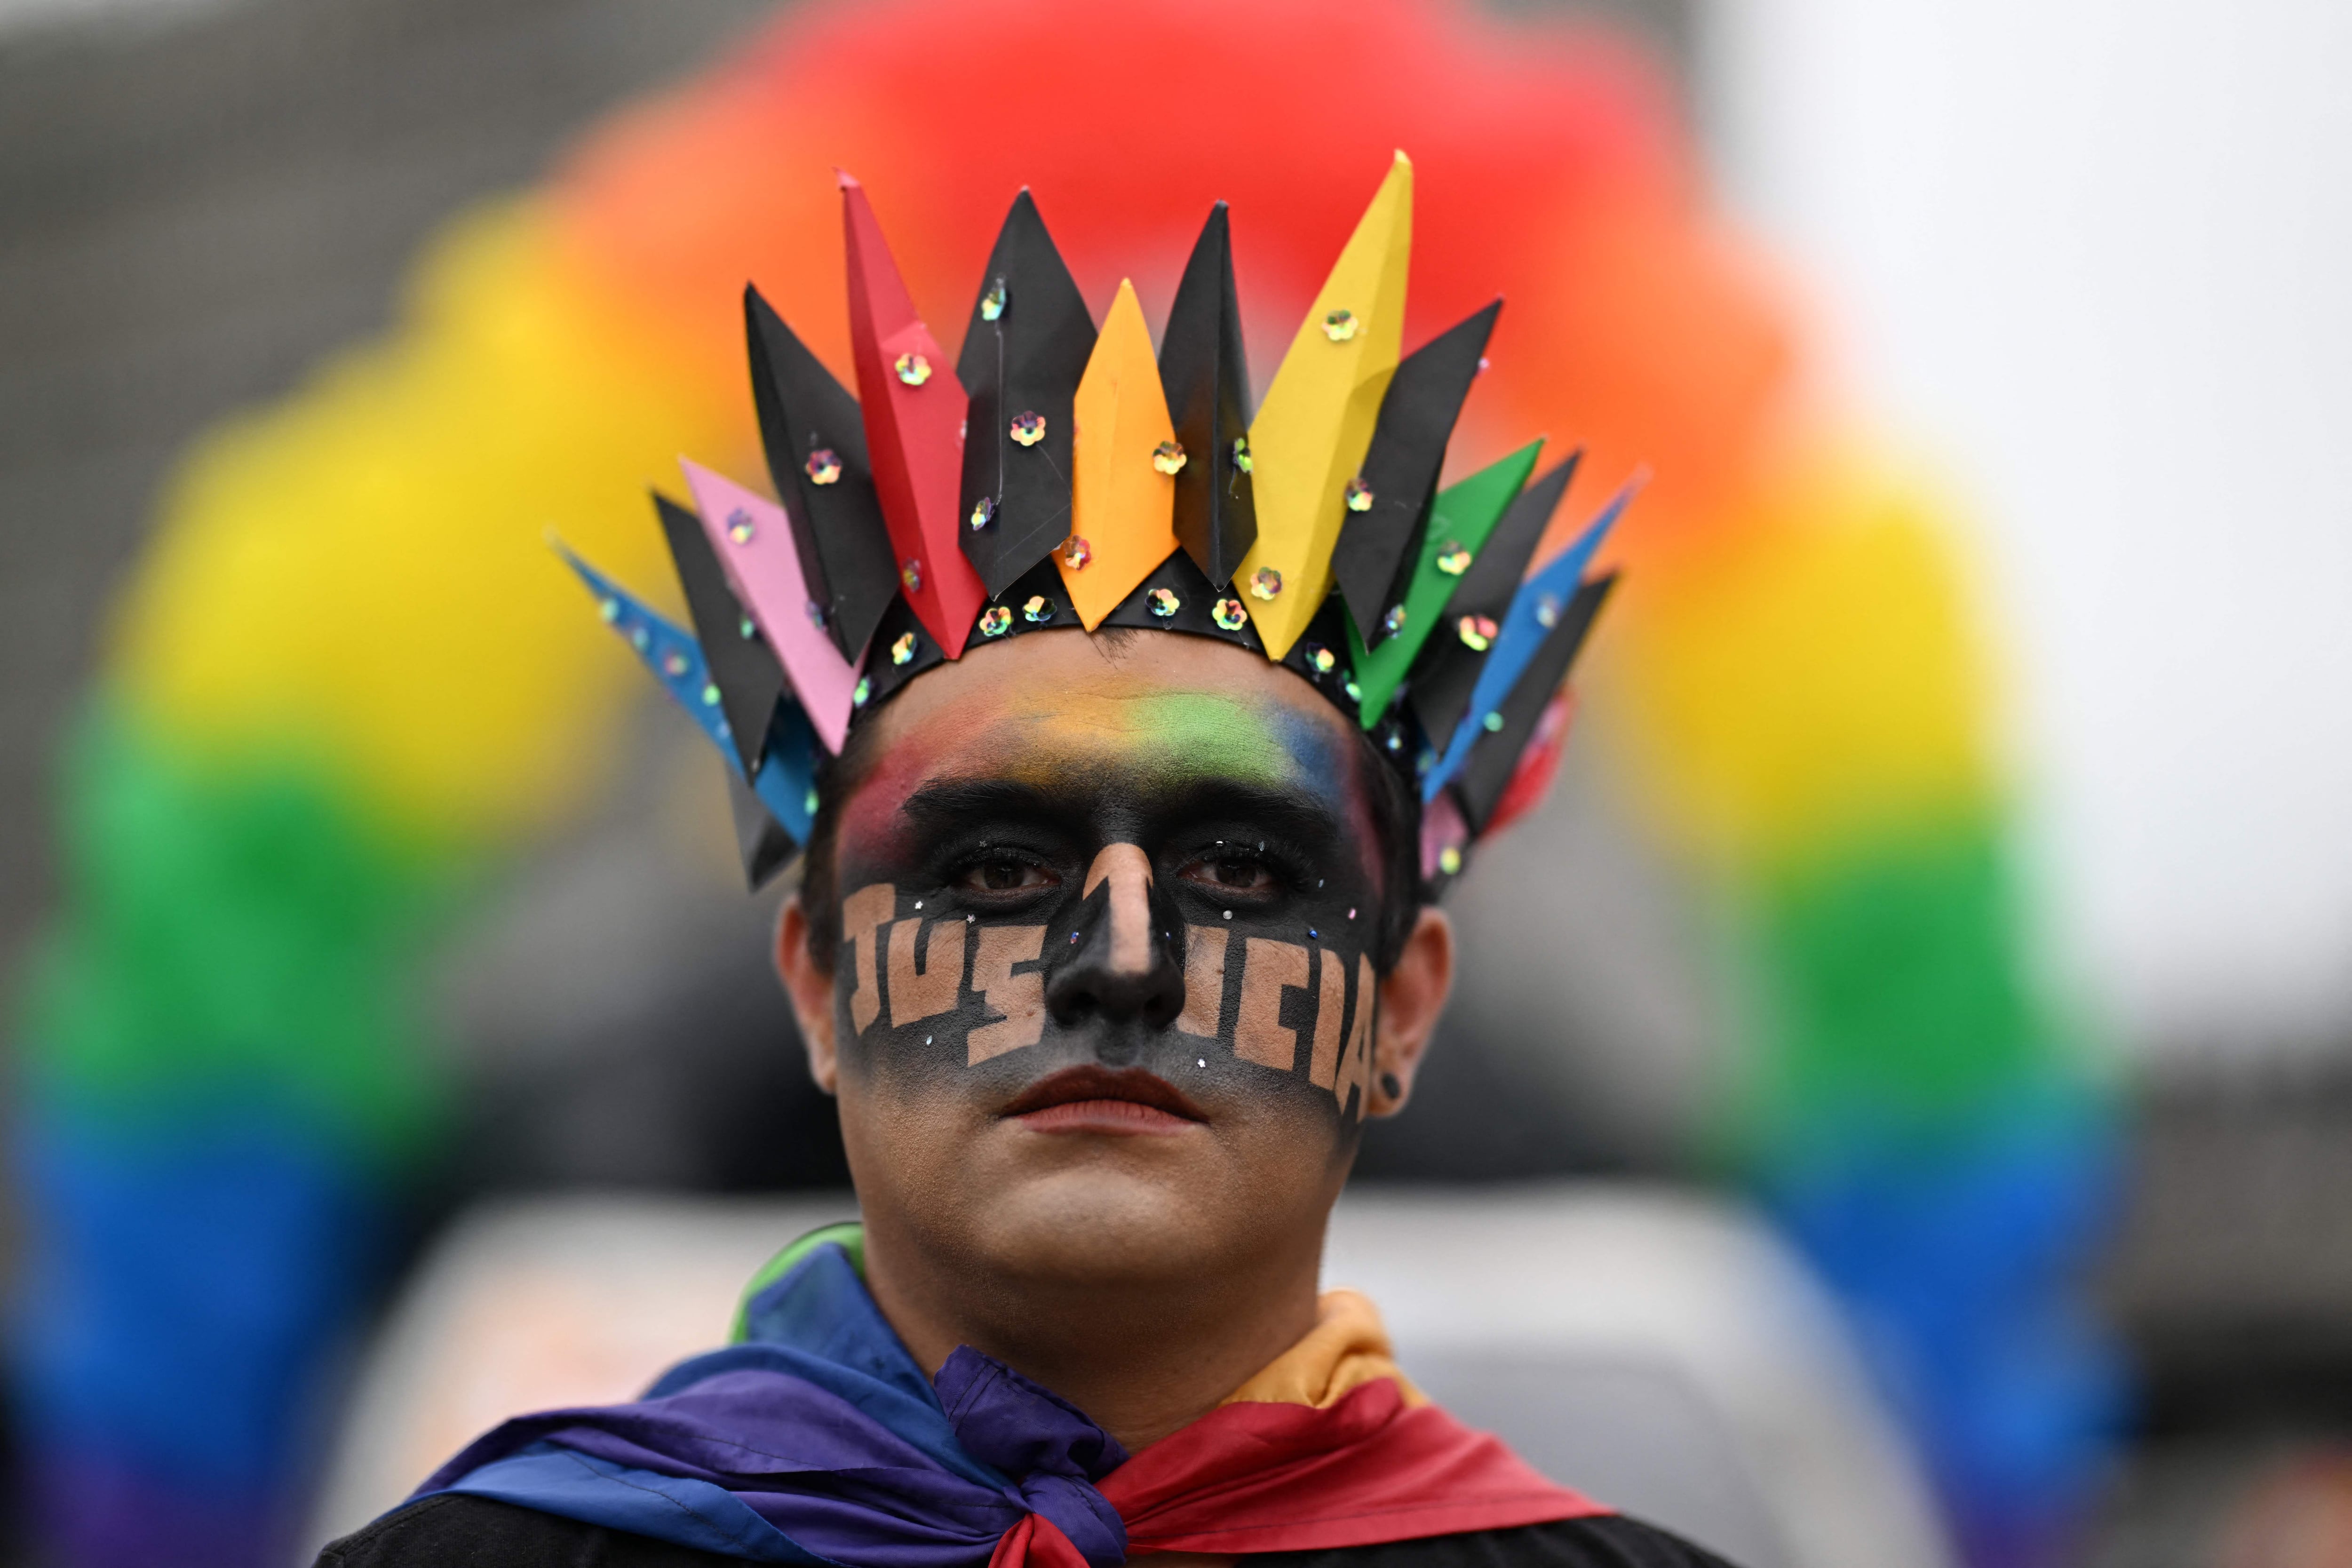 En la ciudad de Guatemala, este joven aprovechó el maquillaje en su rostro para pedir justicia e igualdad de derechos para las personas de la comunidad LGTBIQ+.